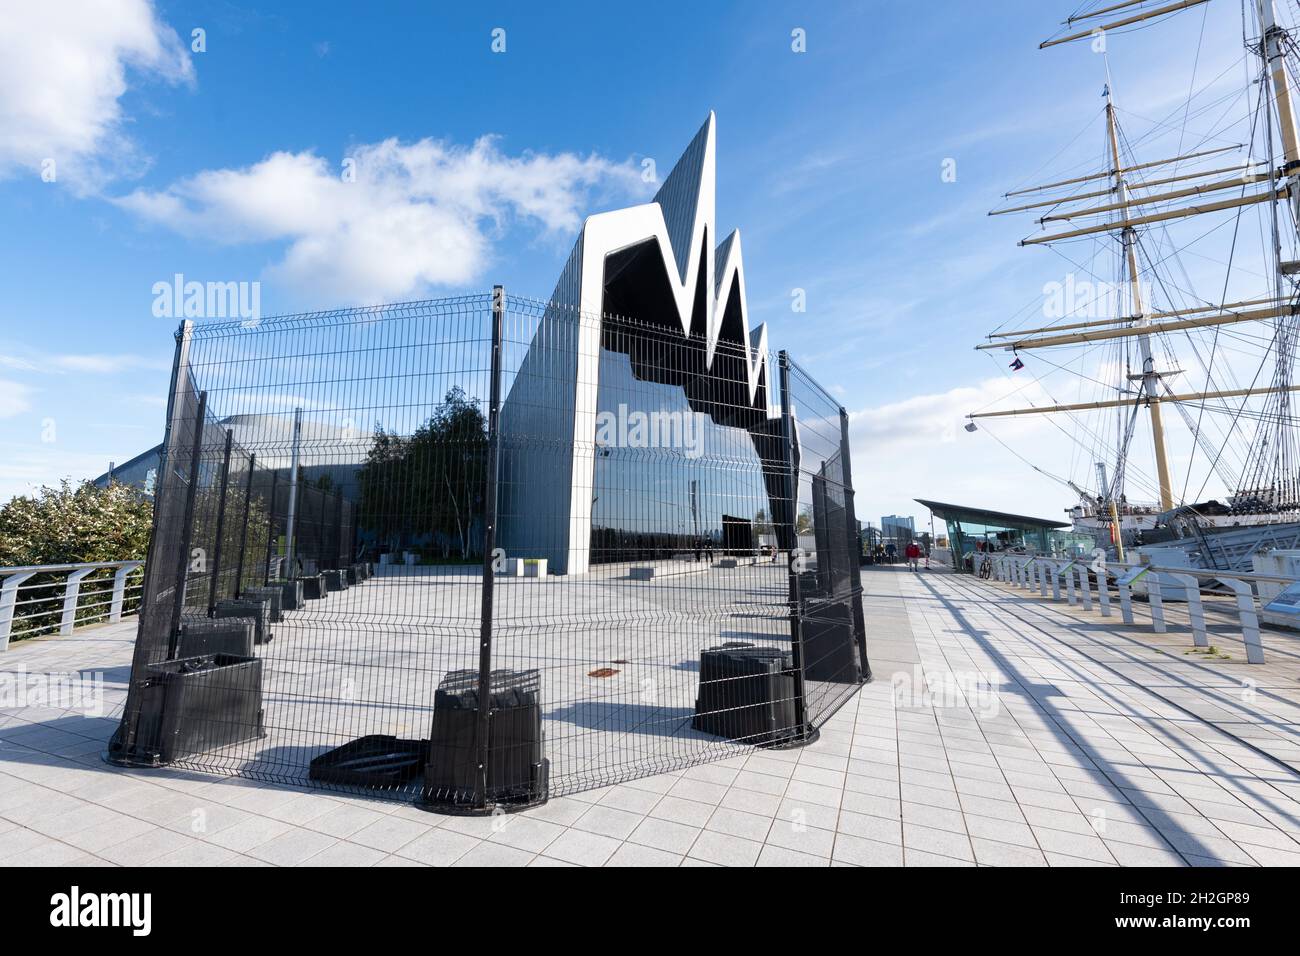 Escrime de sécurité autour du musée Riverside en préparation de la Conférence des Nations Unies sur les changements climatiques (COP26) 2021, Glasgow, Écosse, Royaume-Uni Banque D'Images